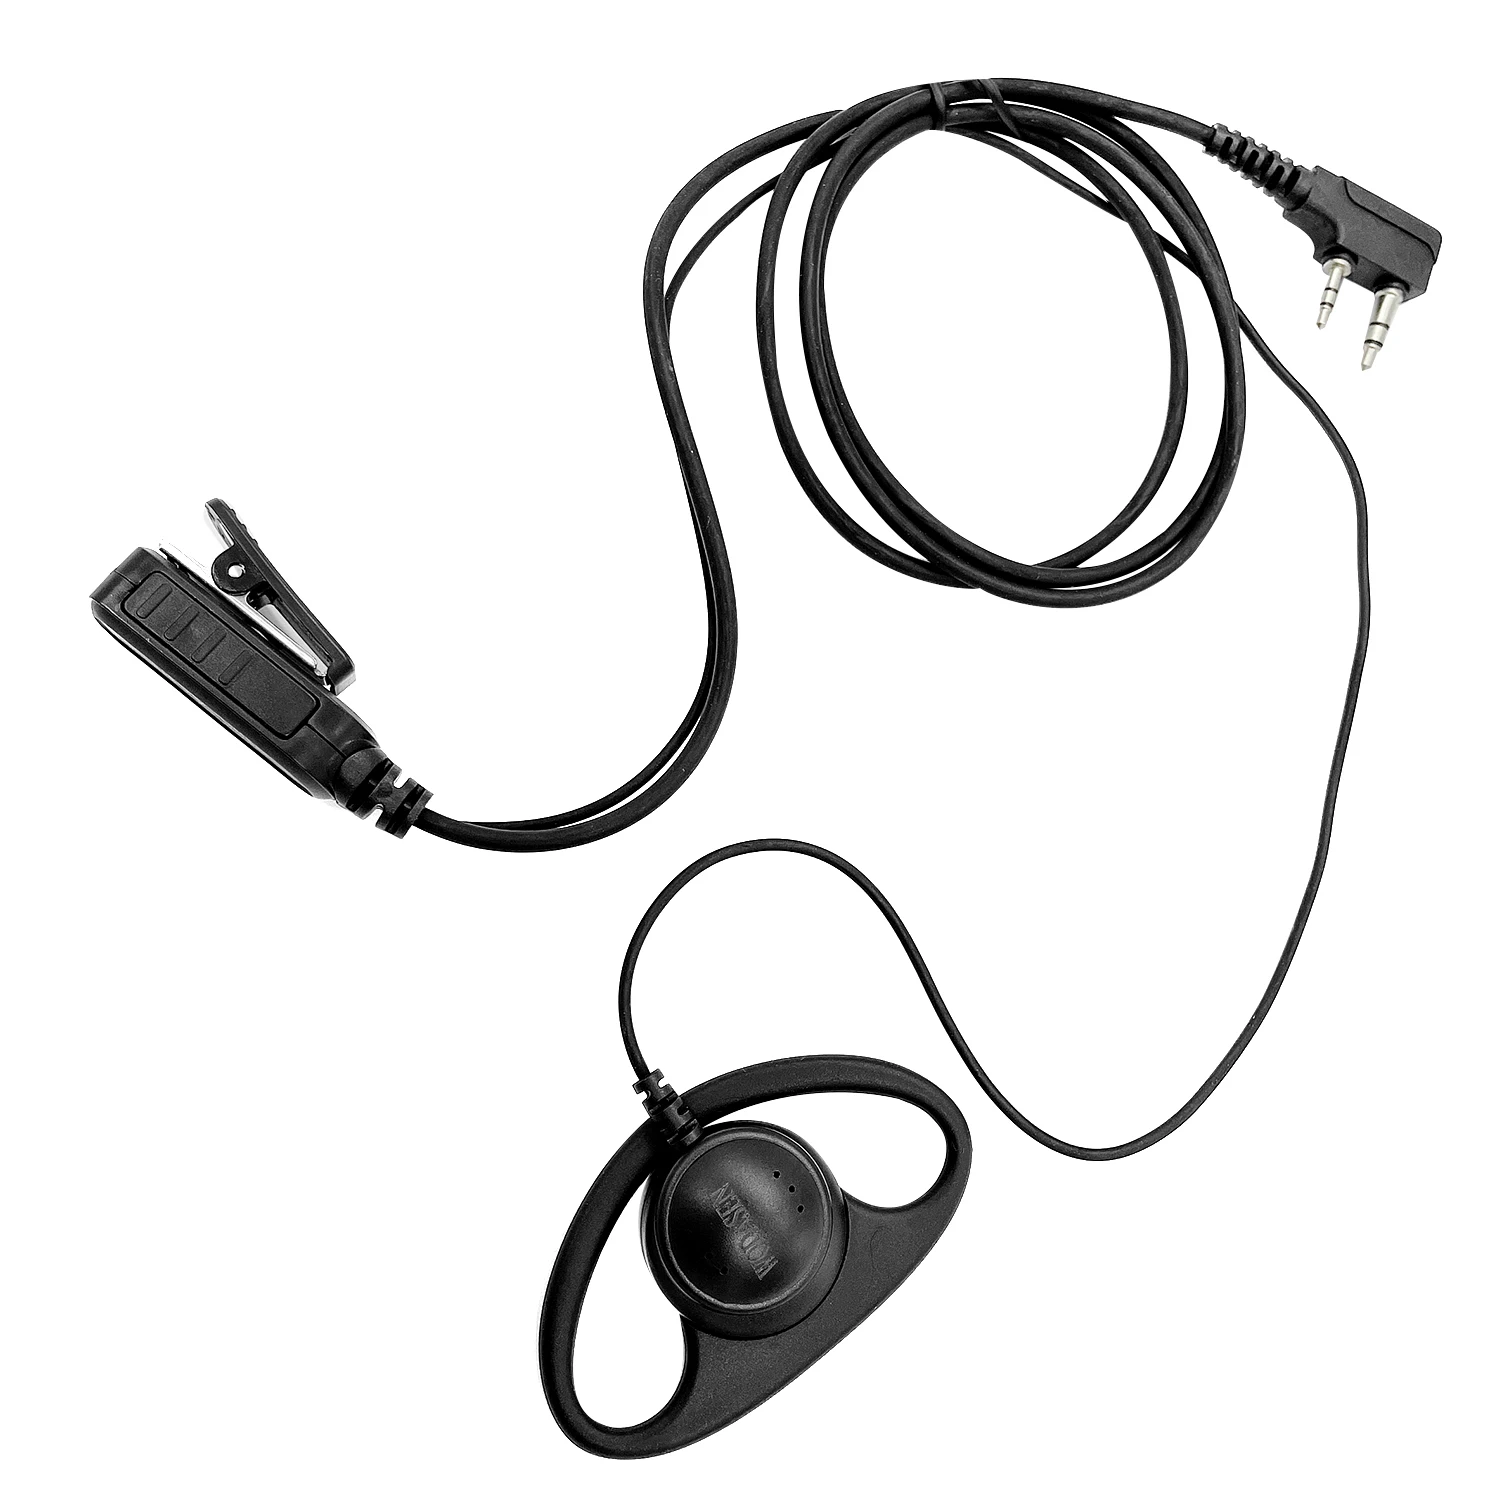 Type D ears hang walkie talkie headset Earpiece for baofeng BF-T3, BF-888S, BF-F8HP, BF-F9, BF-F9 V2+, RD-5R two way radios